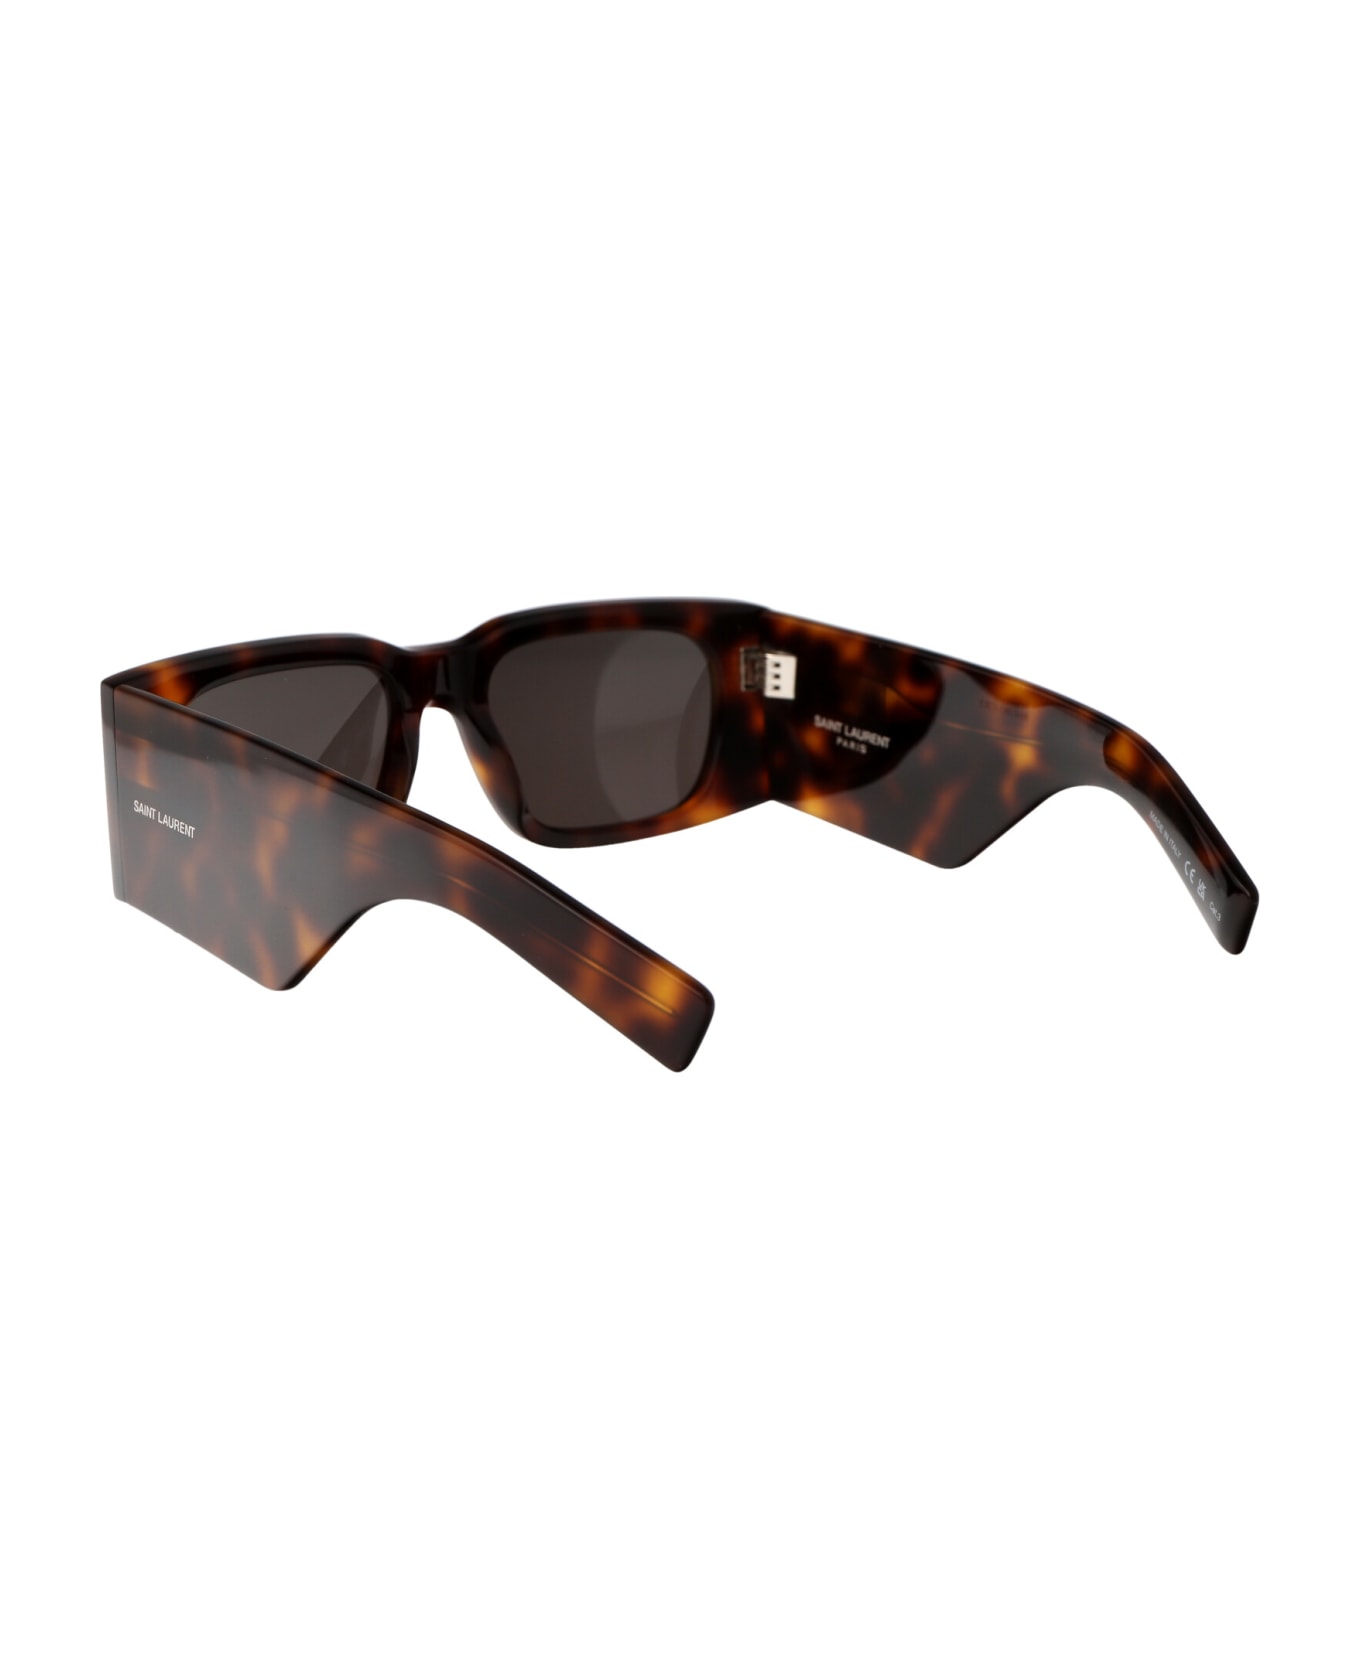 Saint Laurent Eyewear Sl 654 Sunglasses - 003 HAVANA HAVANA BLACK